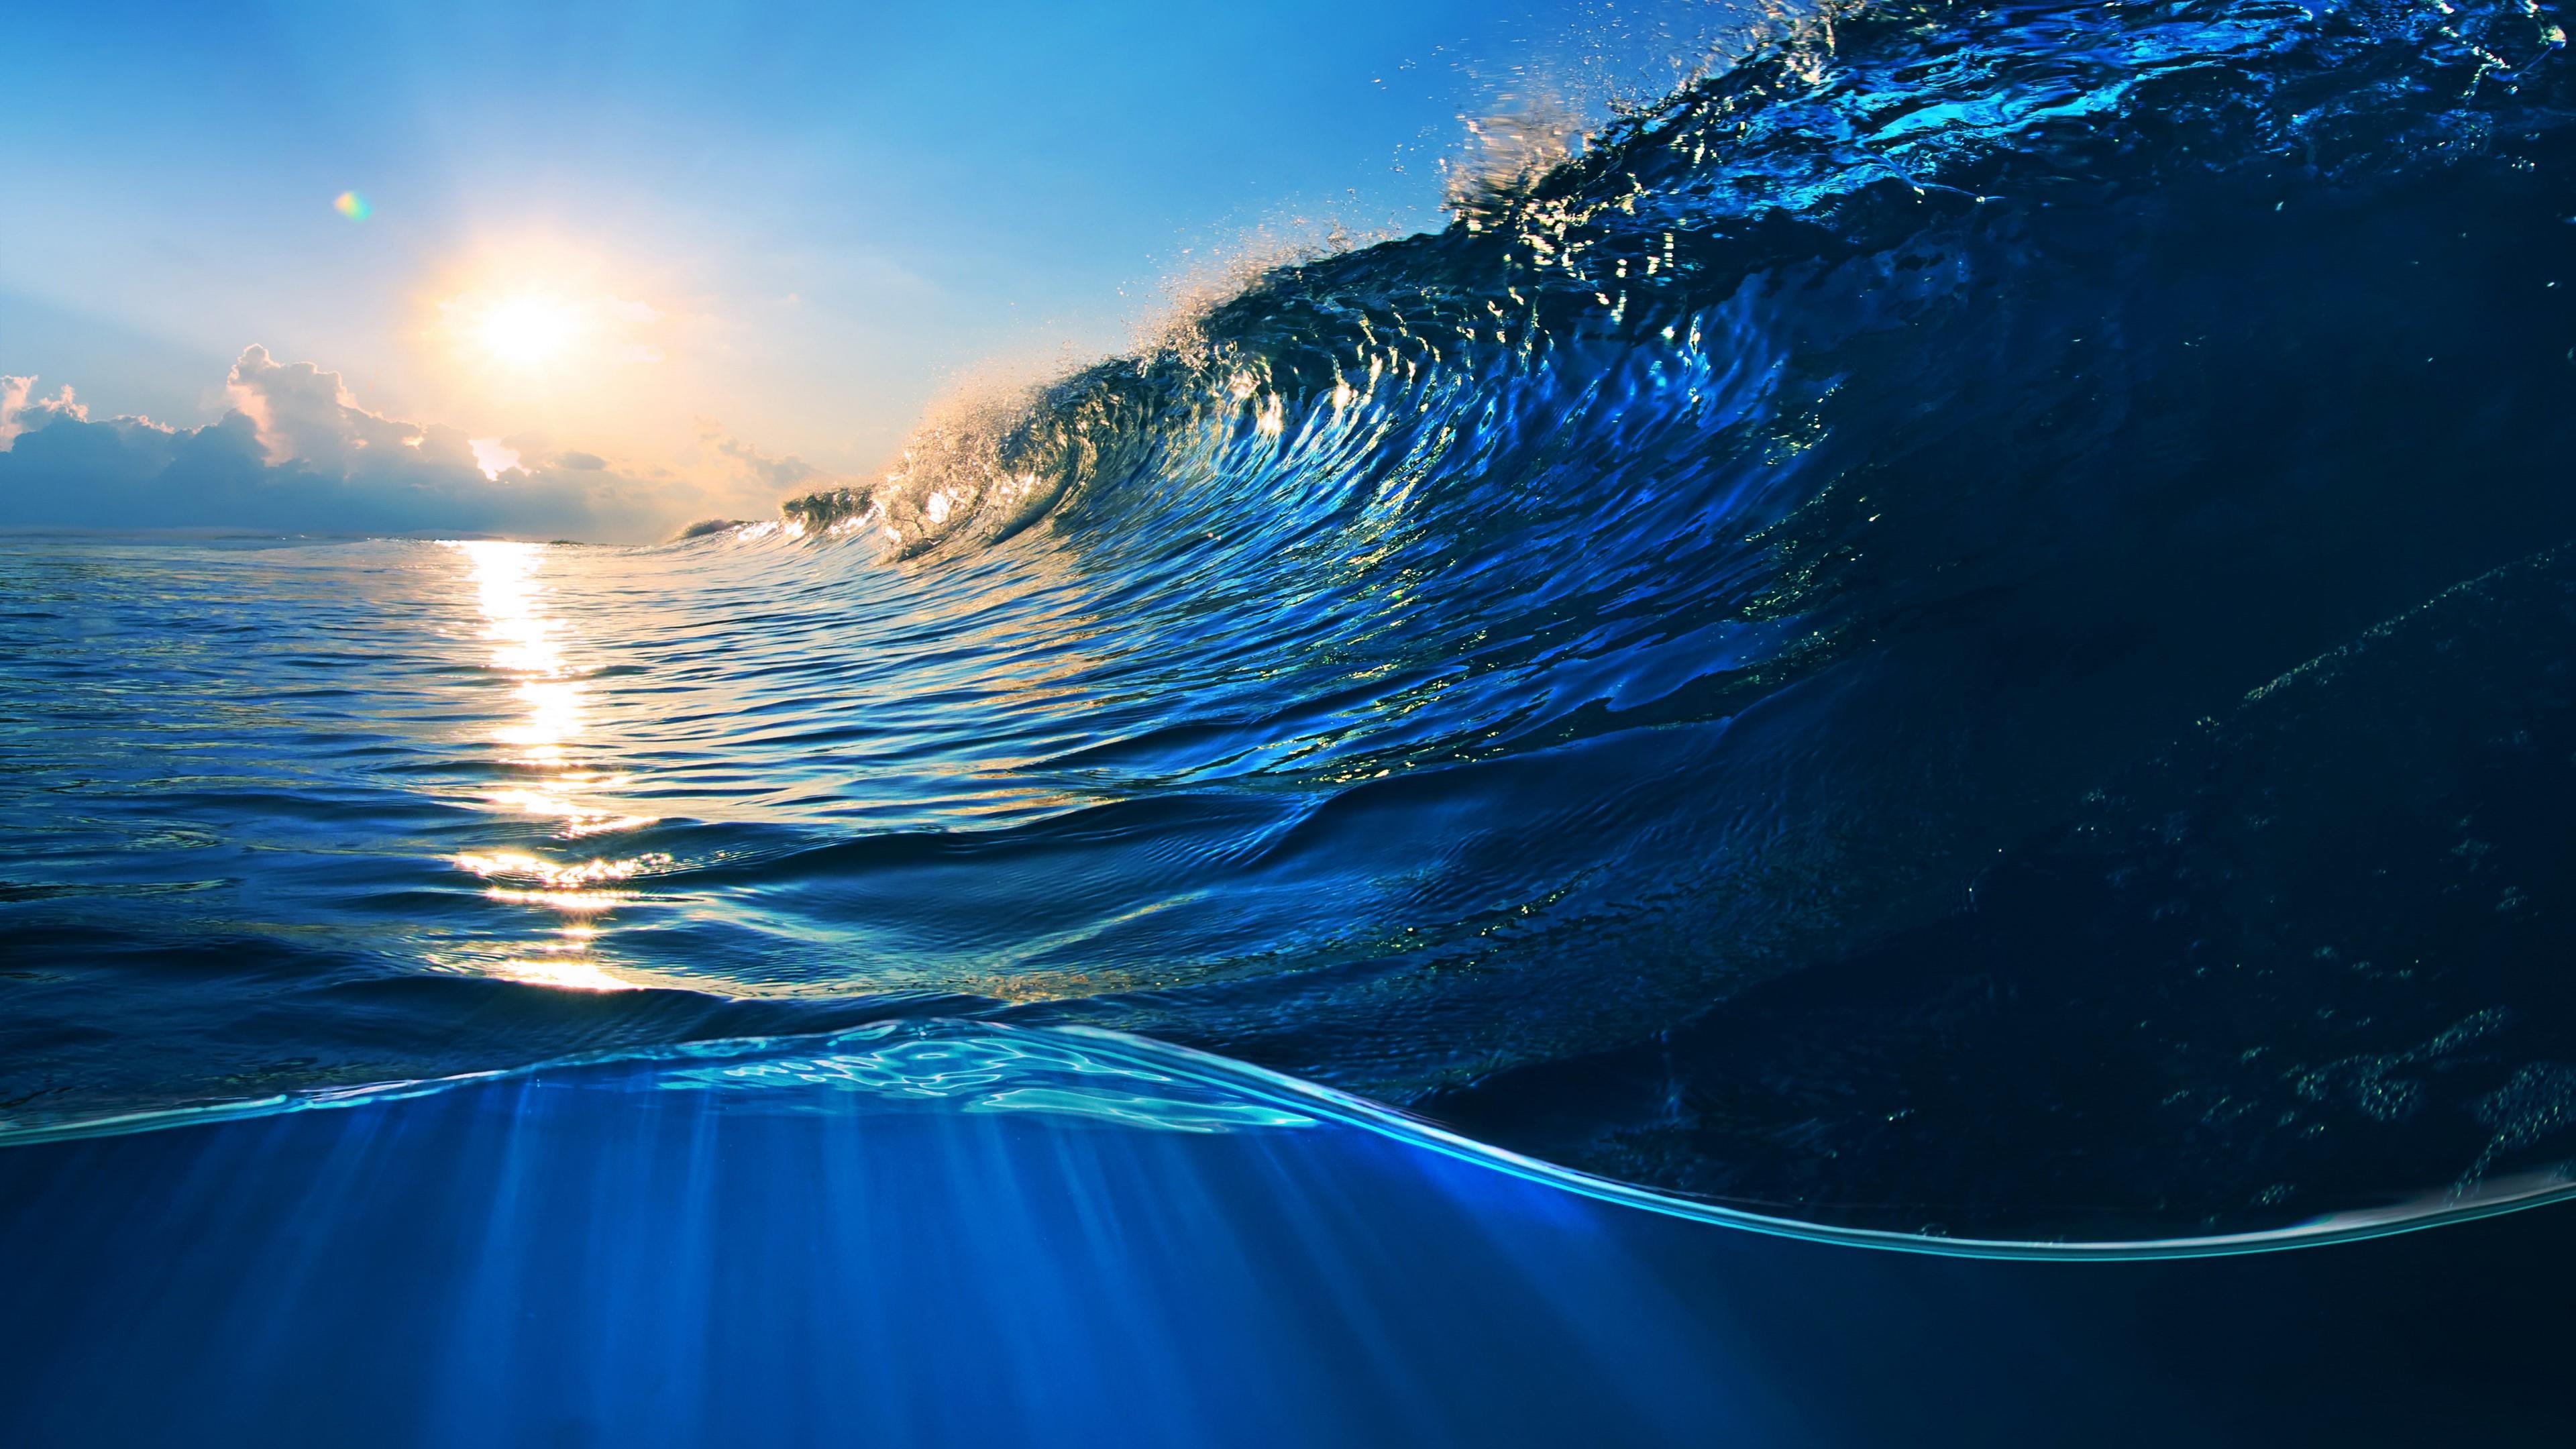 Ocean wallpapers - Khám phá vẻ đẹp của đại dương với bộ sưu tập hình nền Ocean. Từ màu xanh thẳm của biển đến những con cá đầy màu sắc, thế giới dưới nước sẽ khiến bạn như lạc vào một thế giới mới.